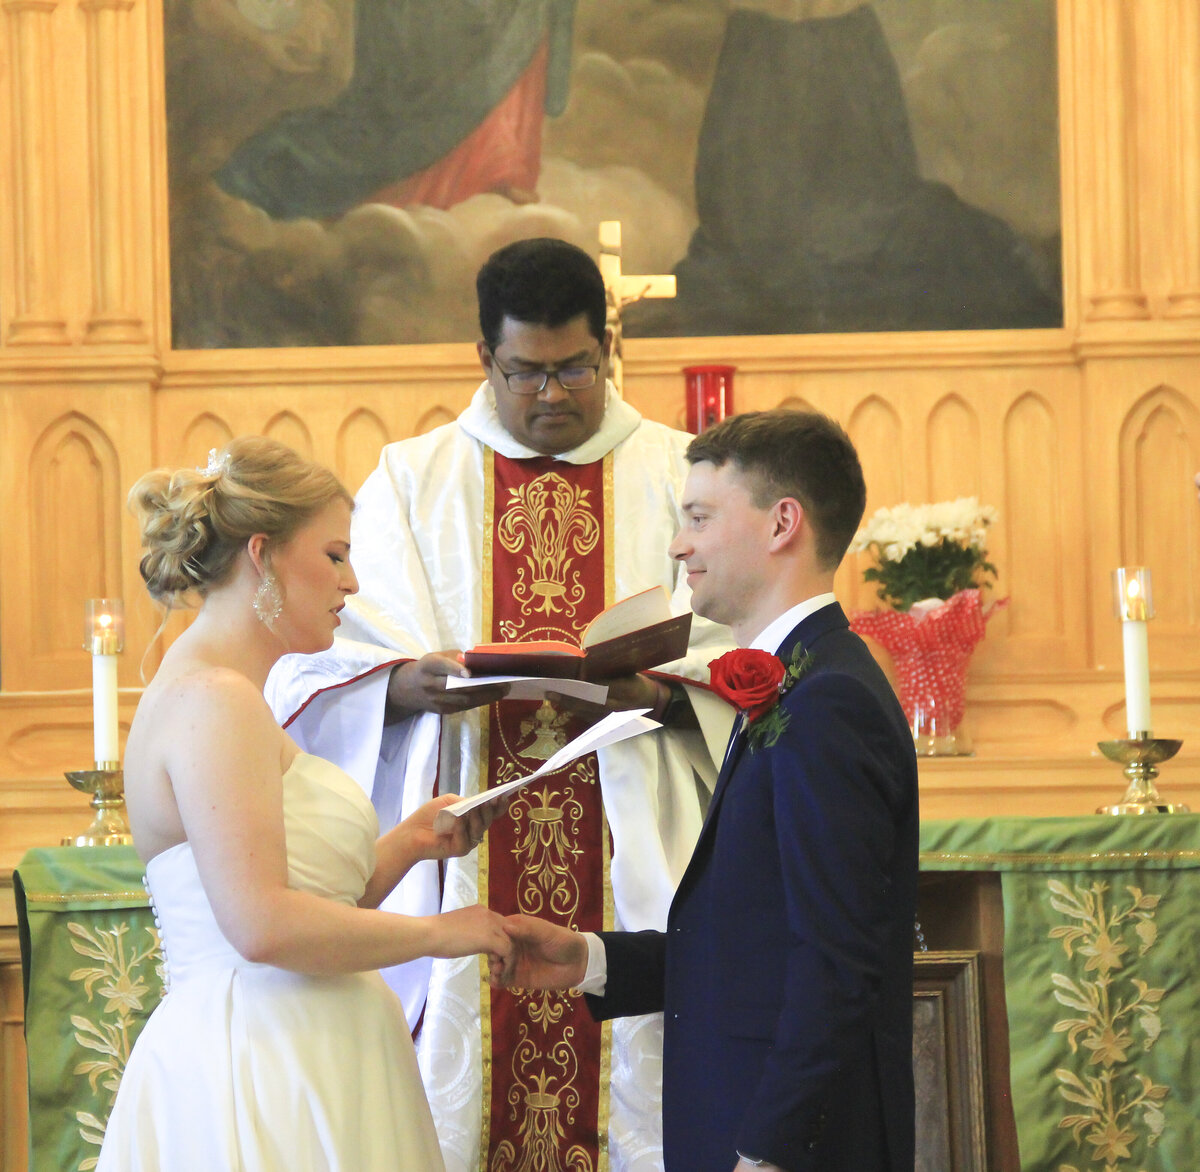 Bride and Groom Wedding vows